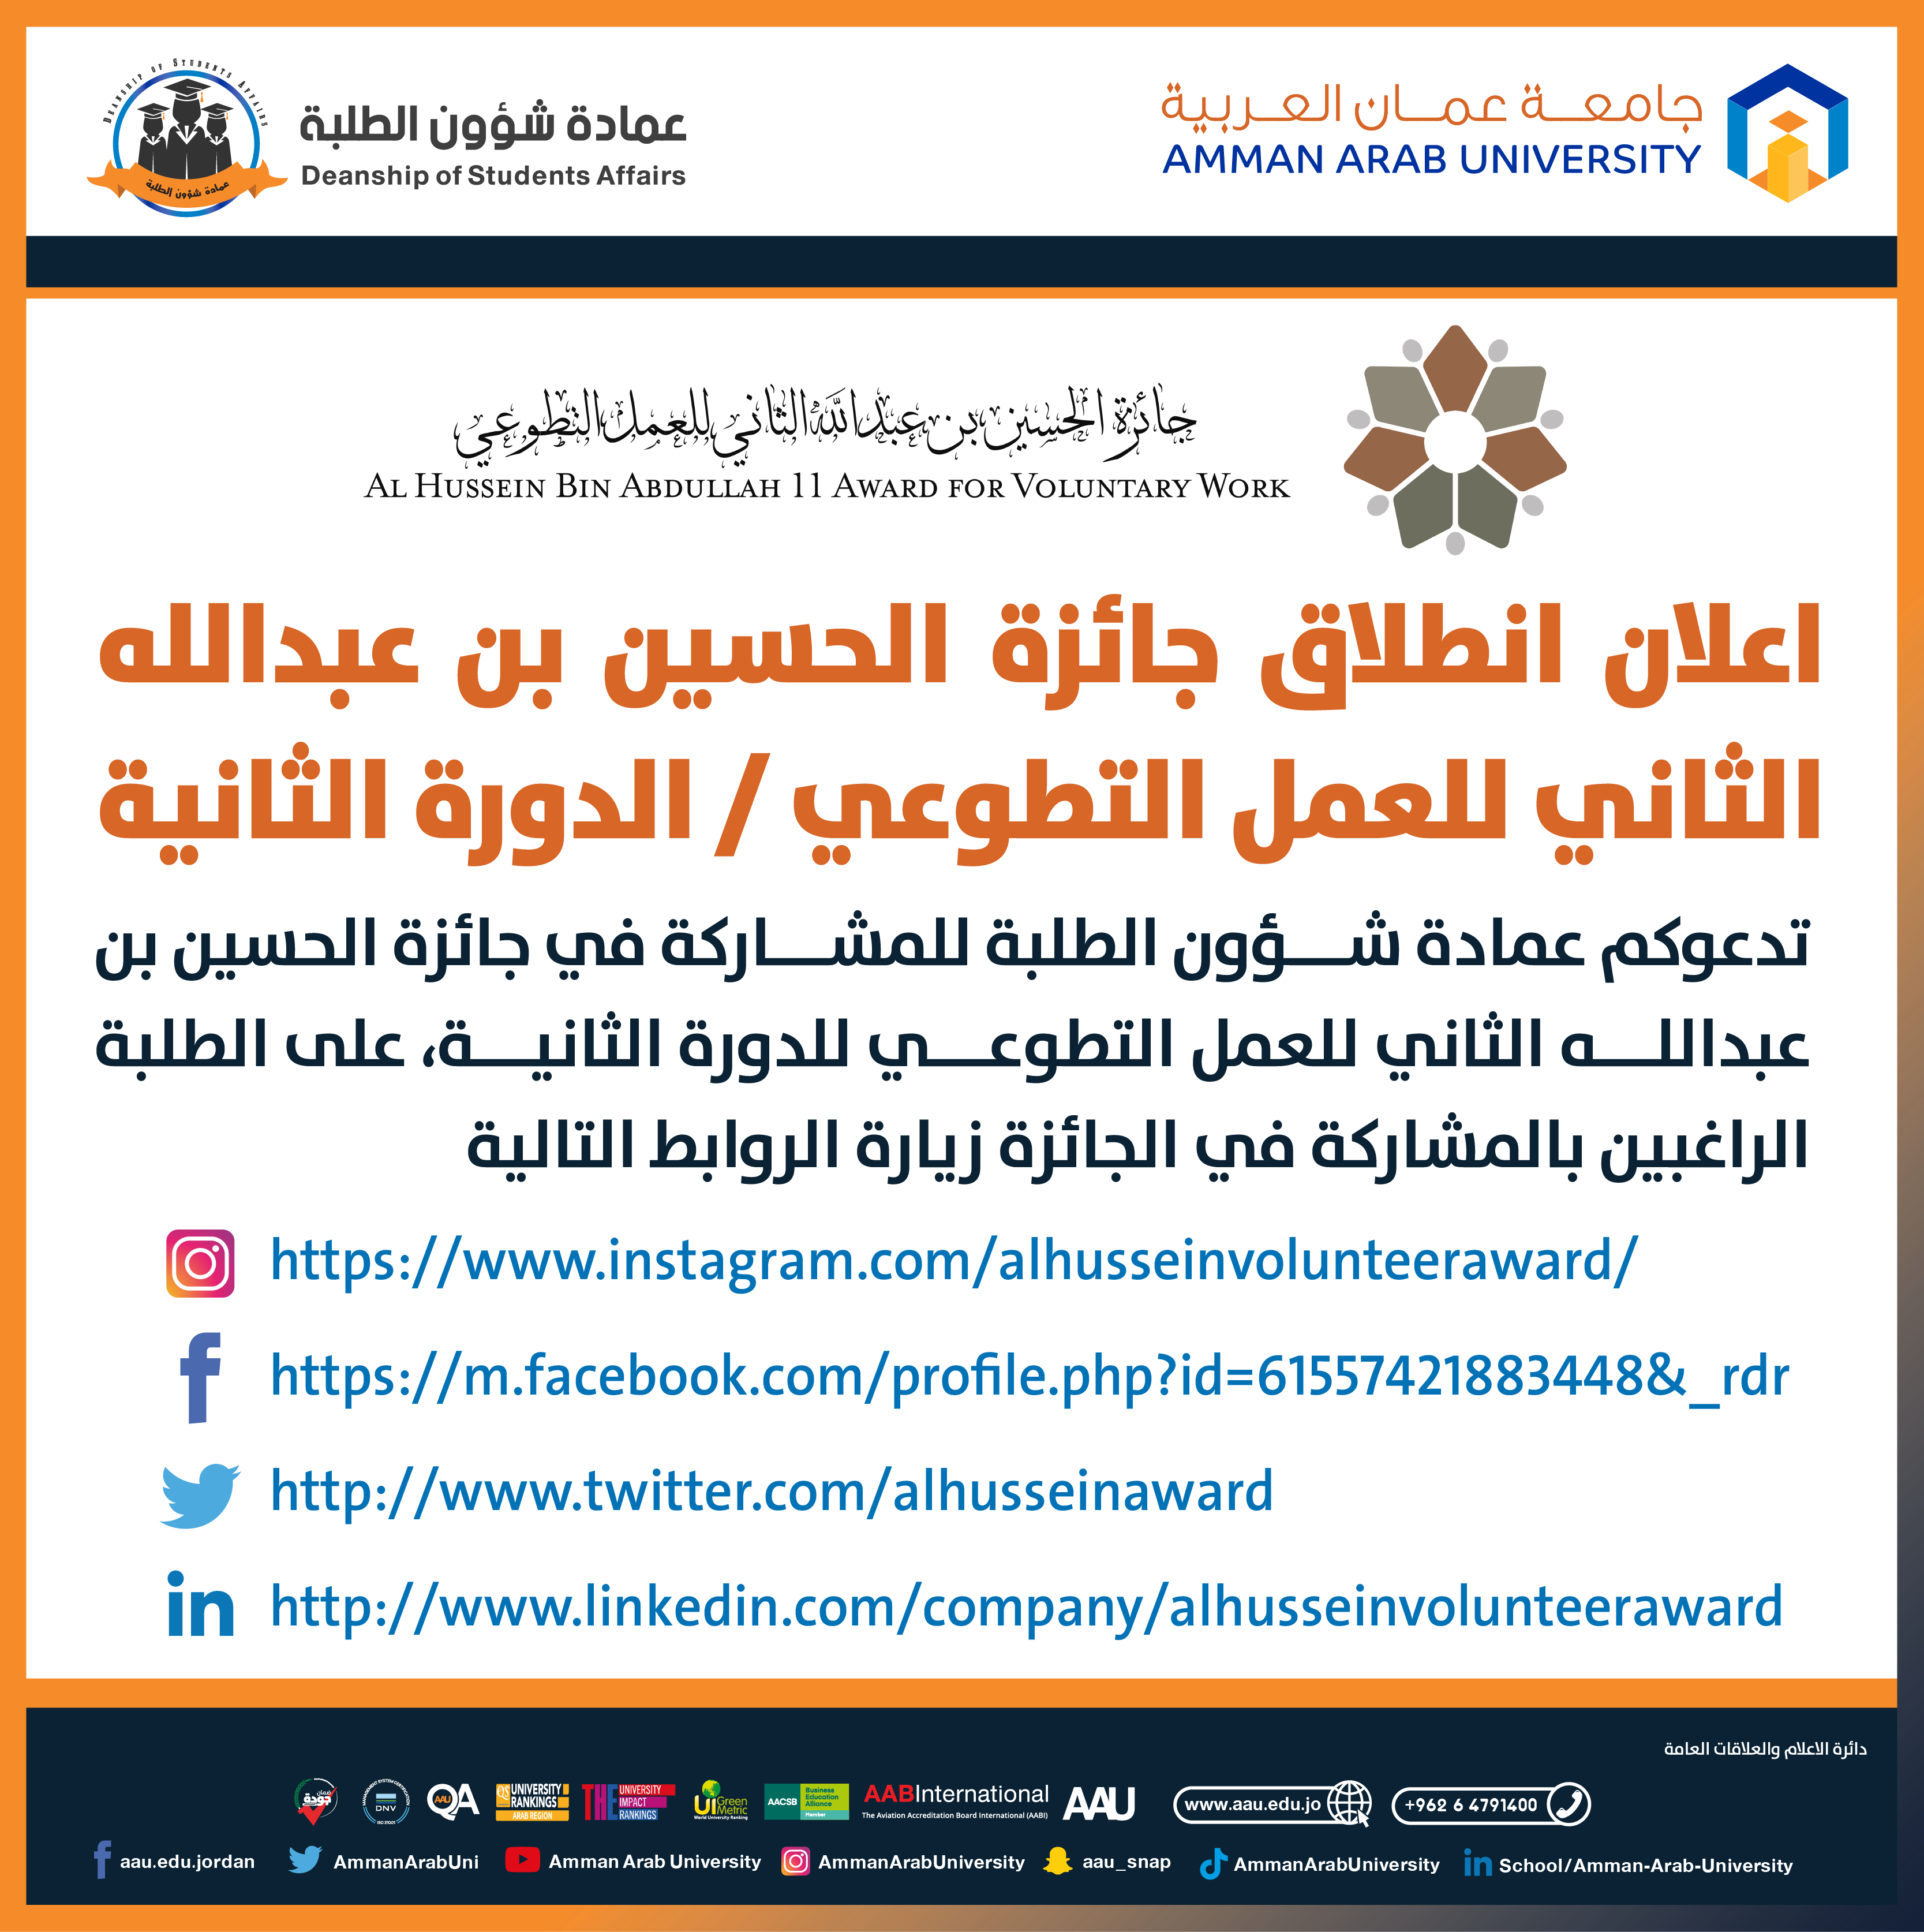 اعلان جائزة الحسين بن عبدالله الثاني للعمل التطوعي - الدورة الثانية